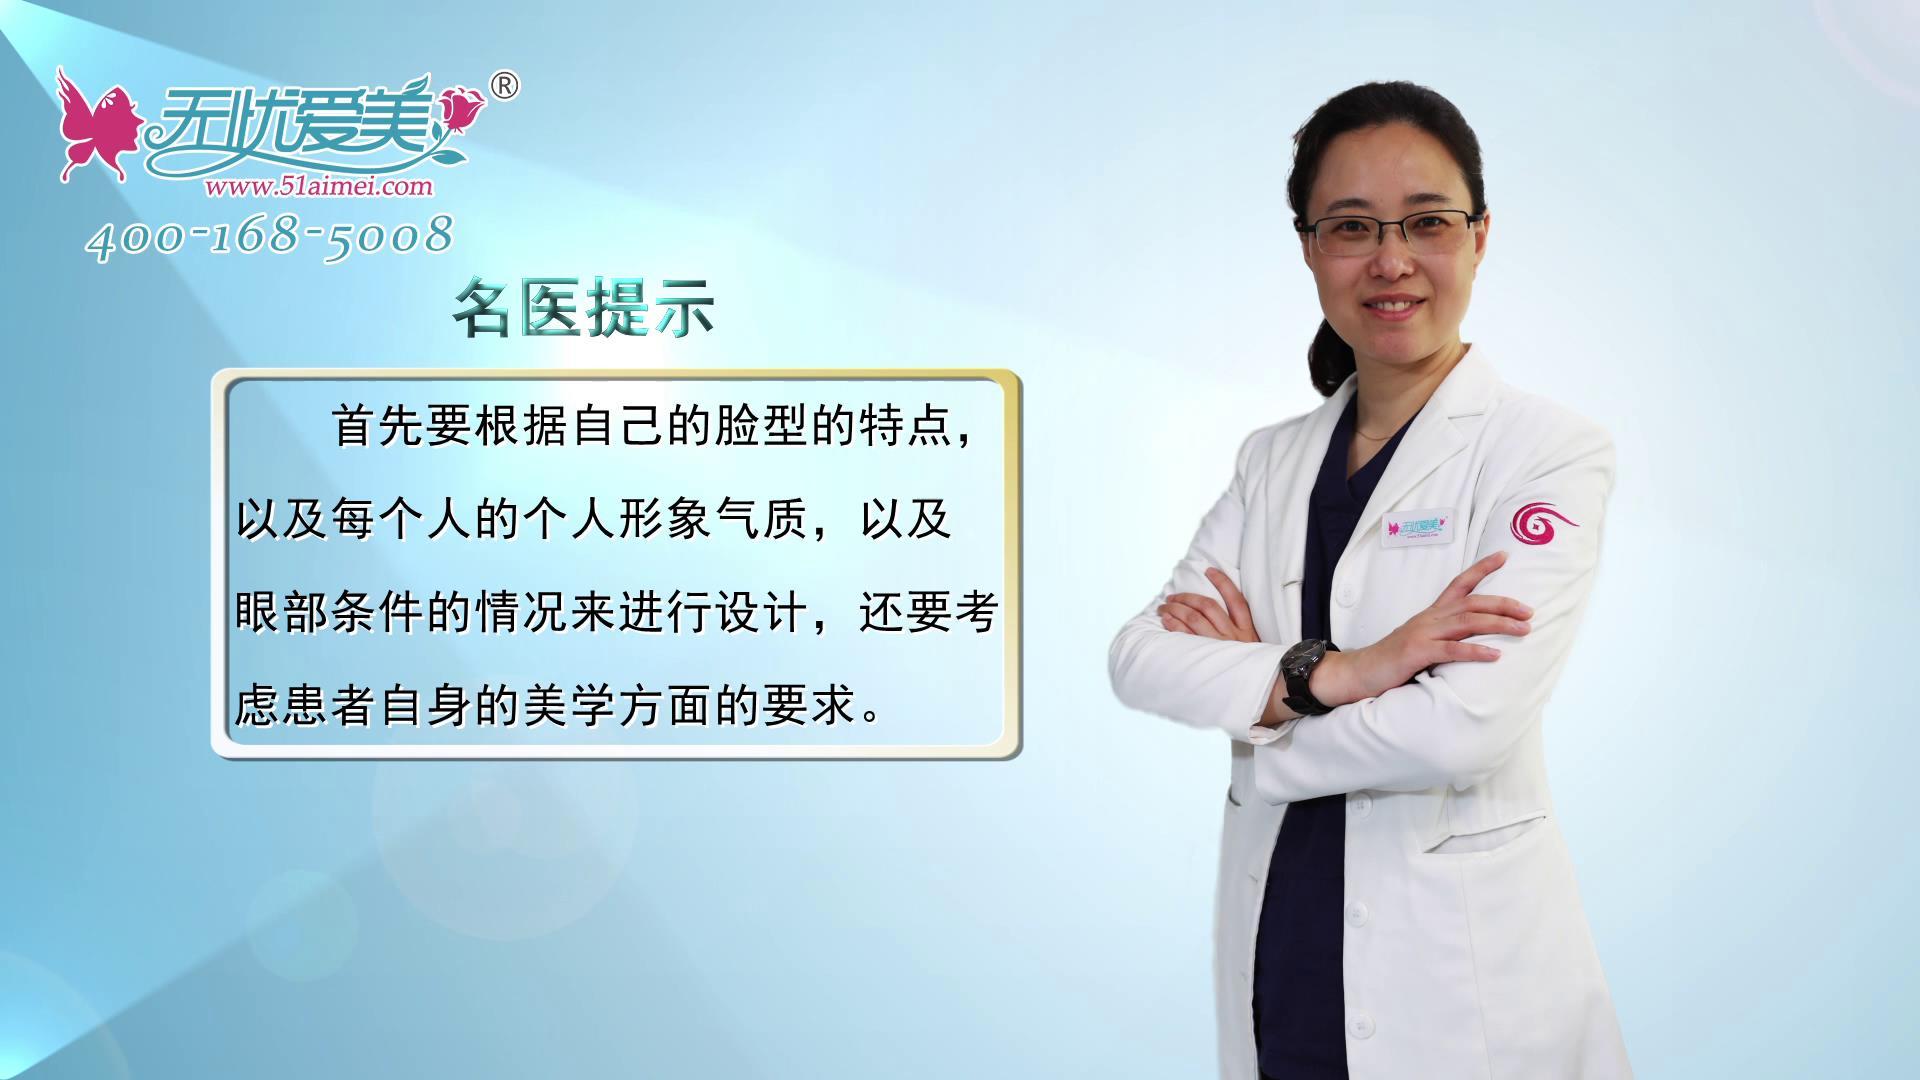 视频!南京华美王小林医生解答如何选择合适自己的双眼皮